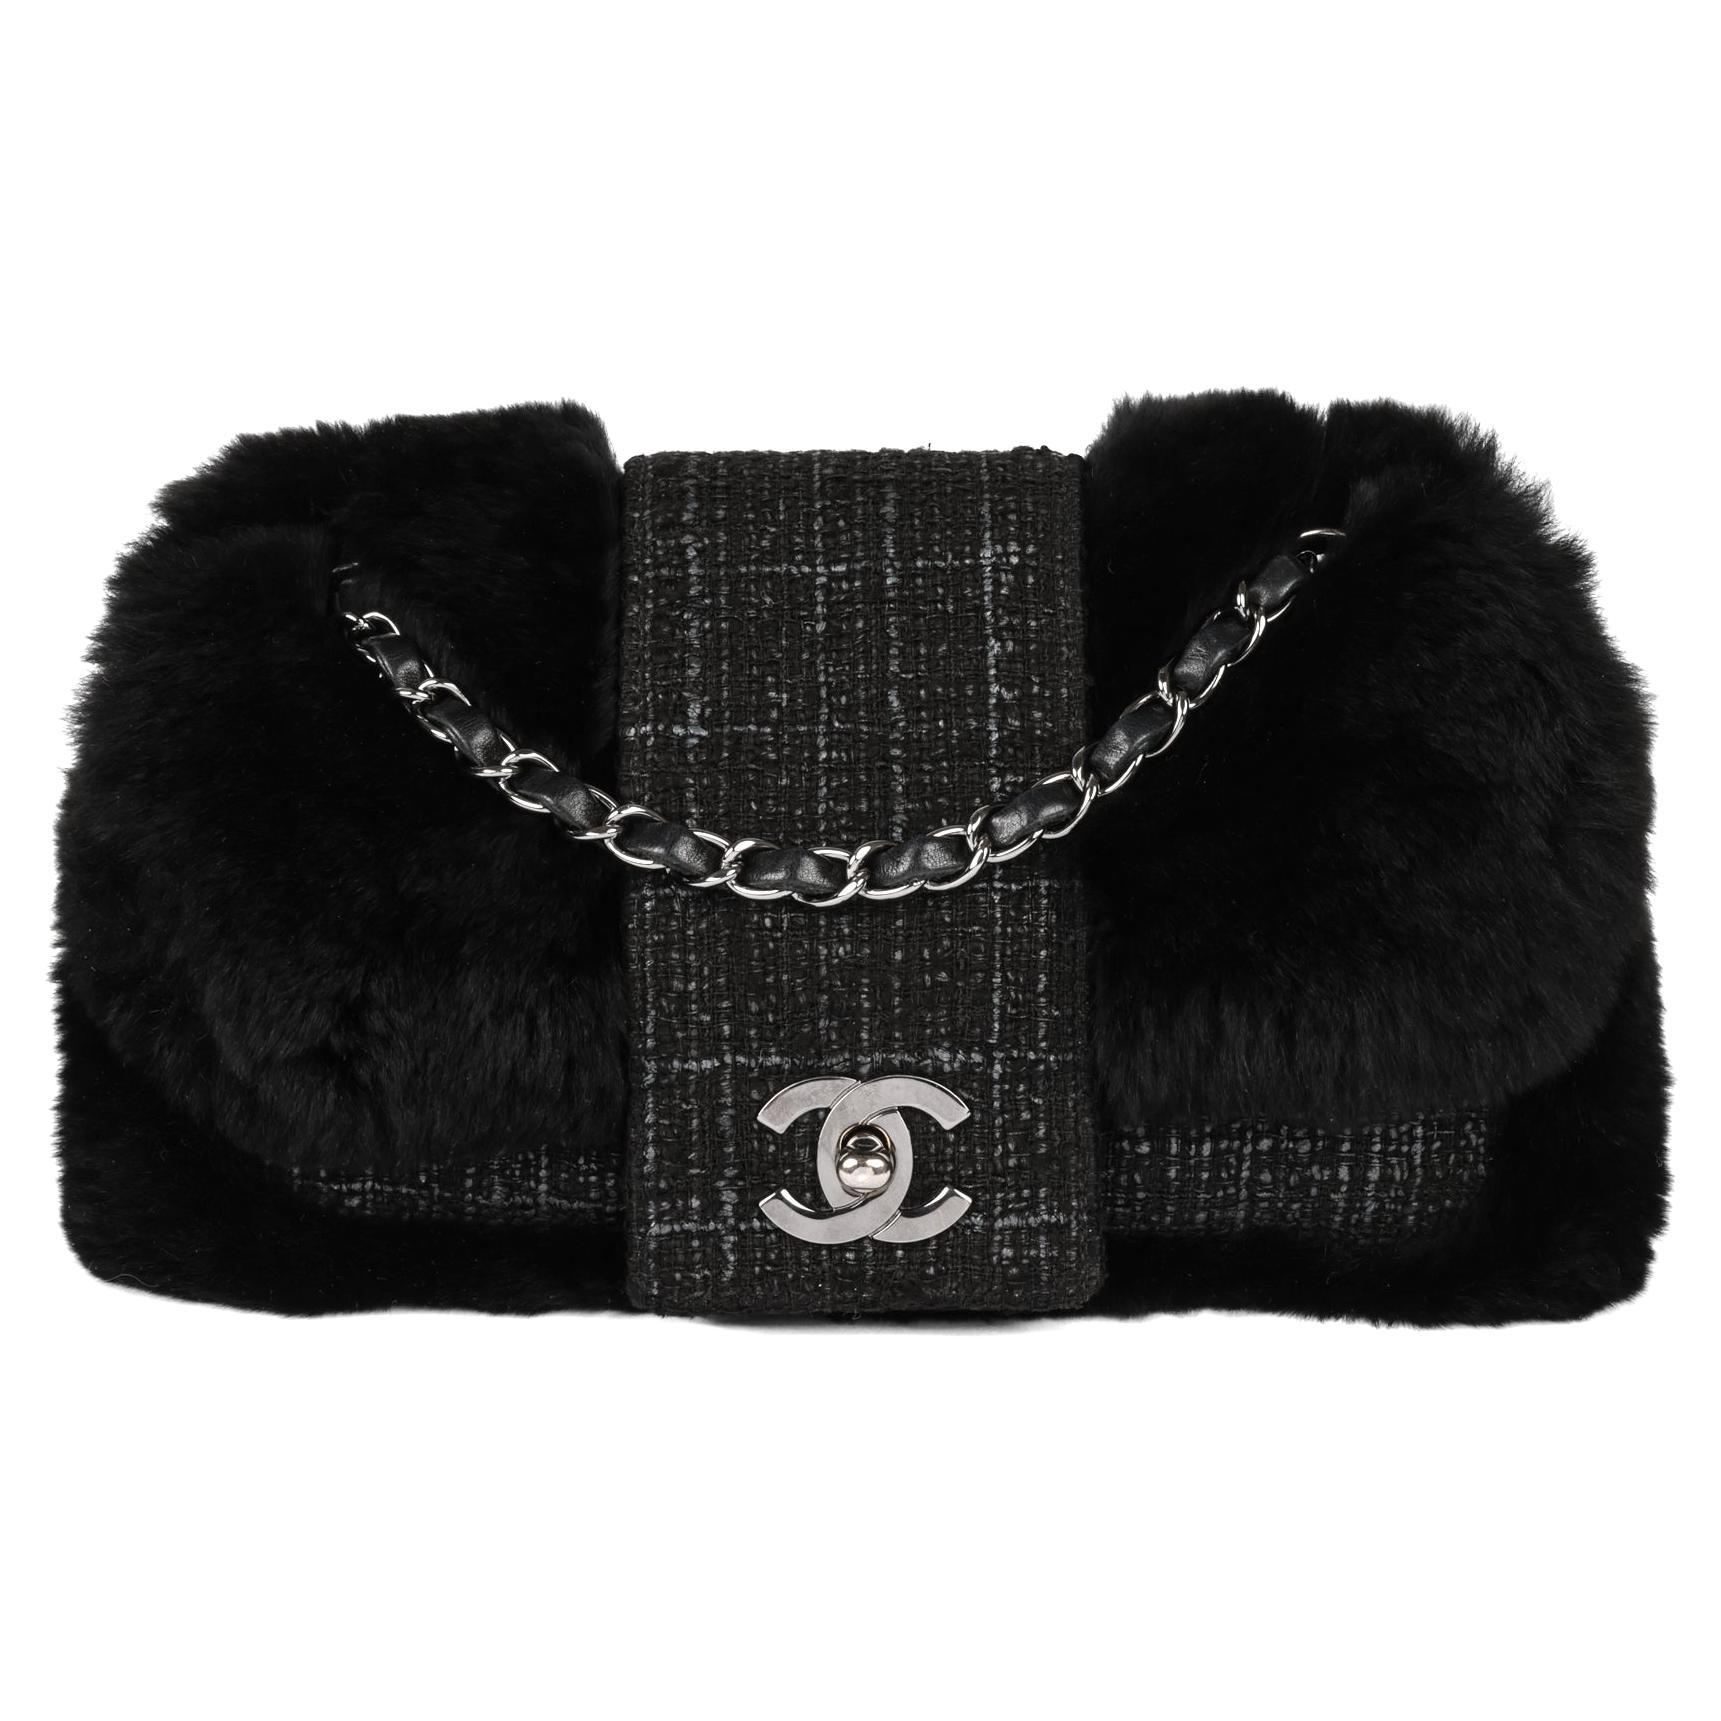 CHANEL Black Fantasy Fur & Grey Tweed Medium Classic Single Flap Bag For Sale